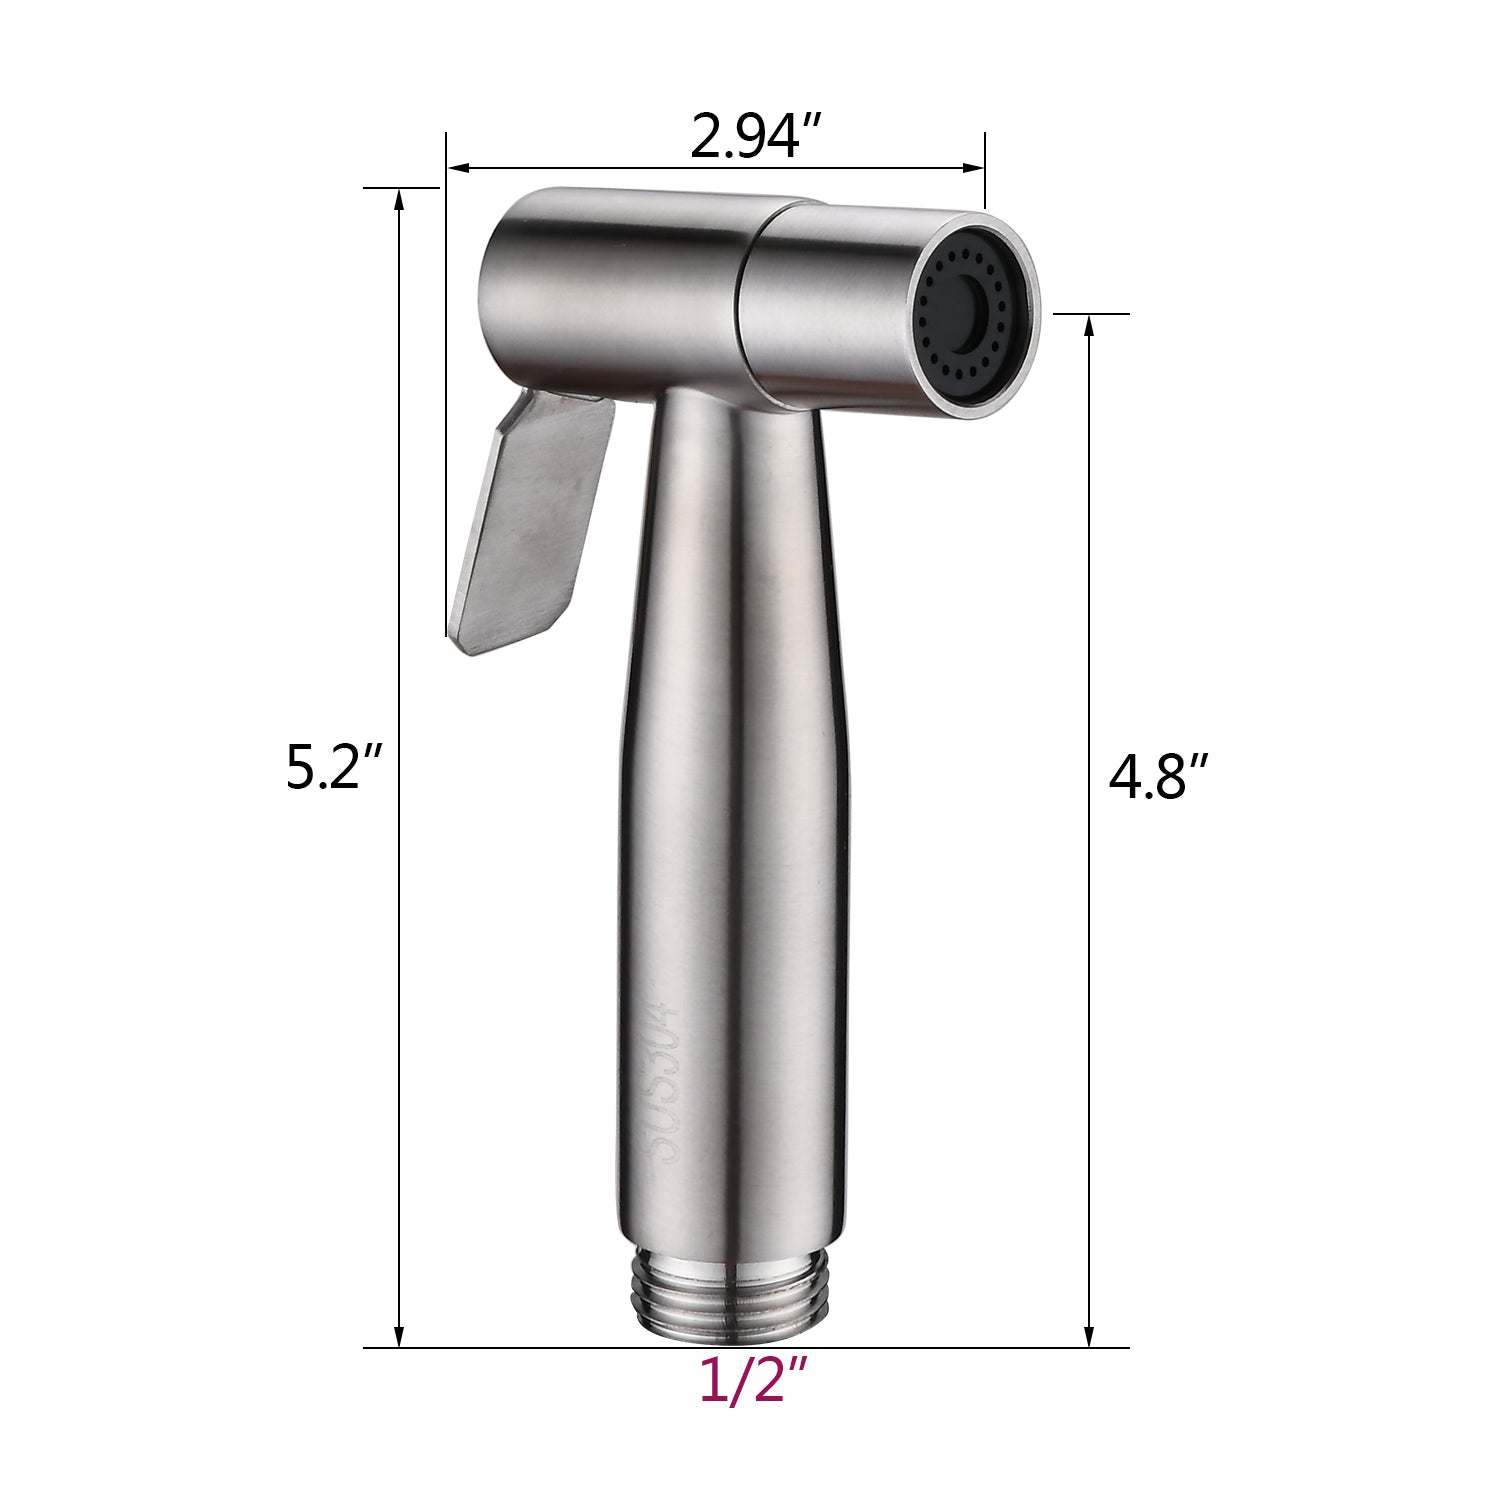 Handheld Bidet Sprayer for Toilet Brushed Nickel brushed nickel-stainless steel